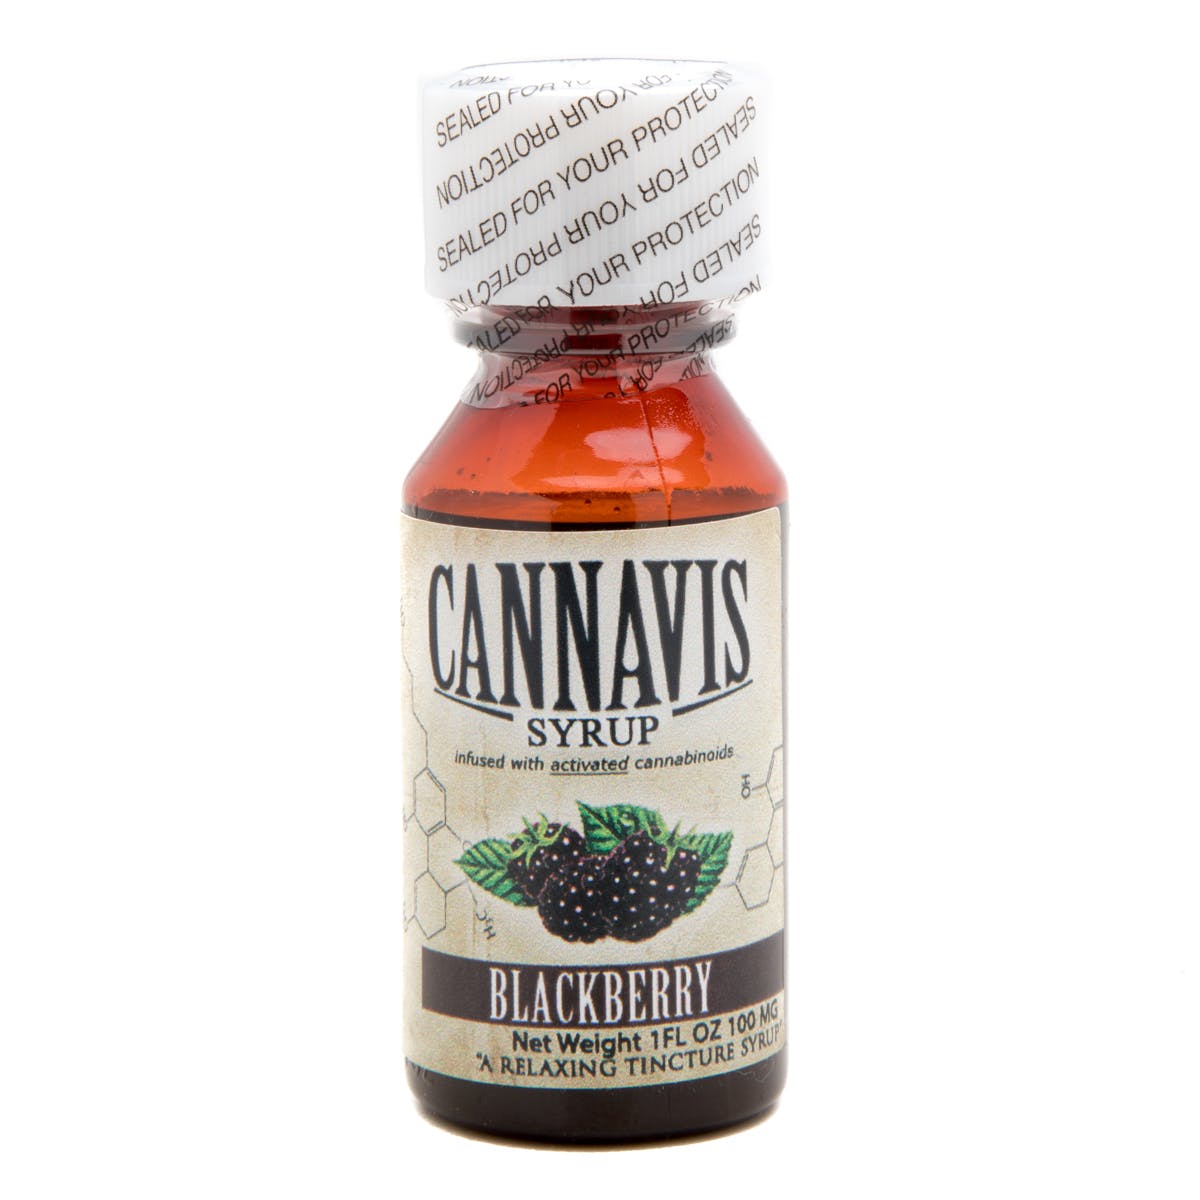 marijuana-dispensaries-gec-in-gardena-cannavis-syrup-2c-blackberry-100mg